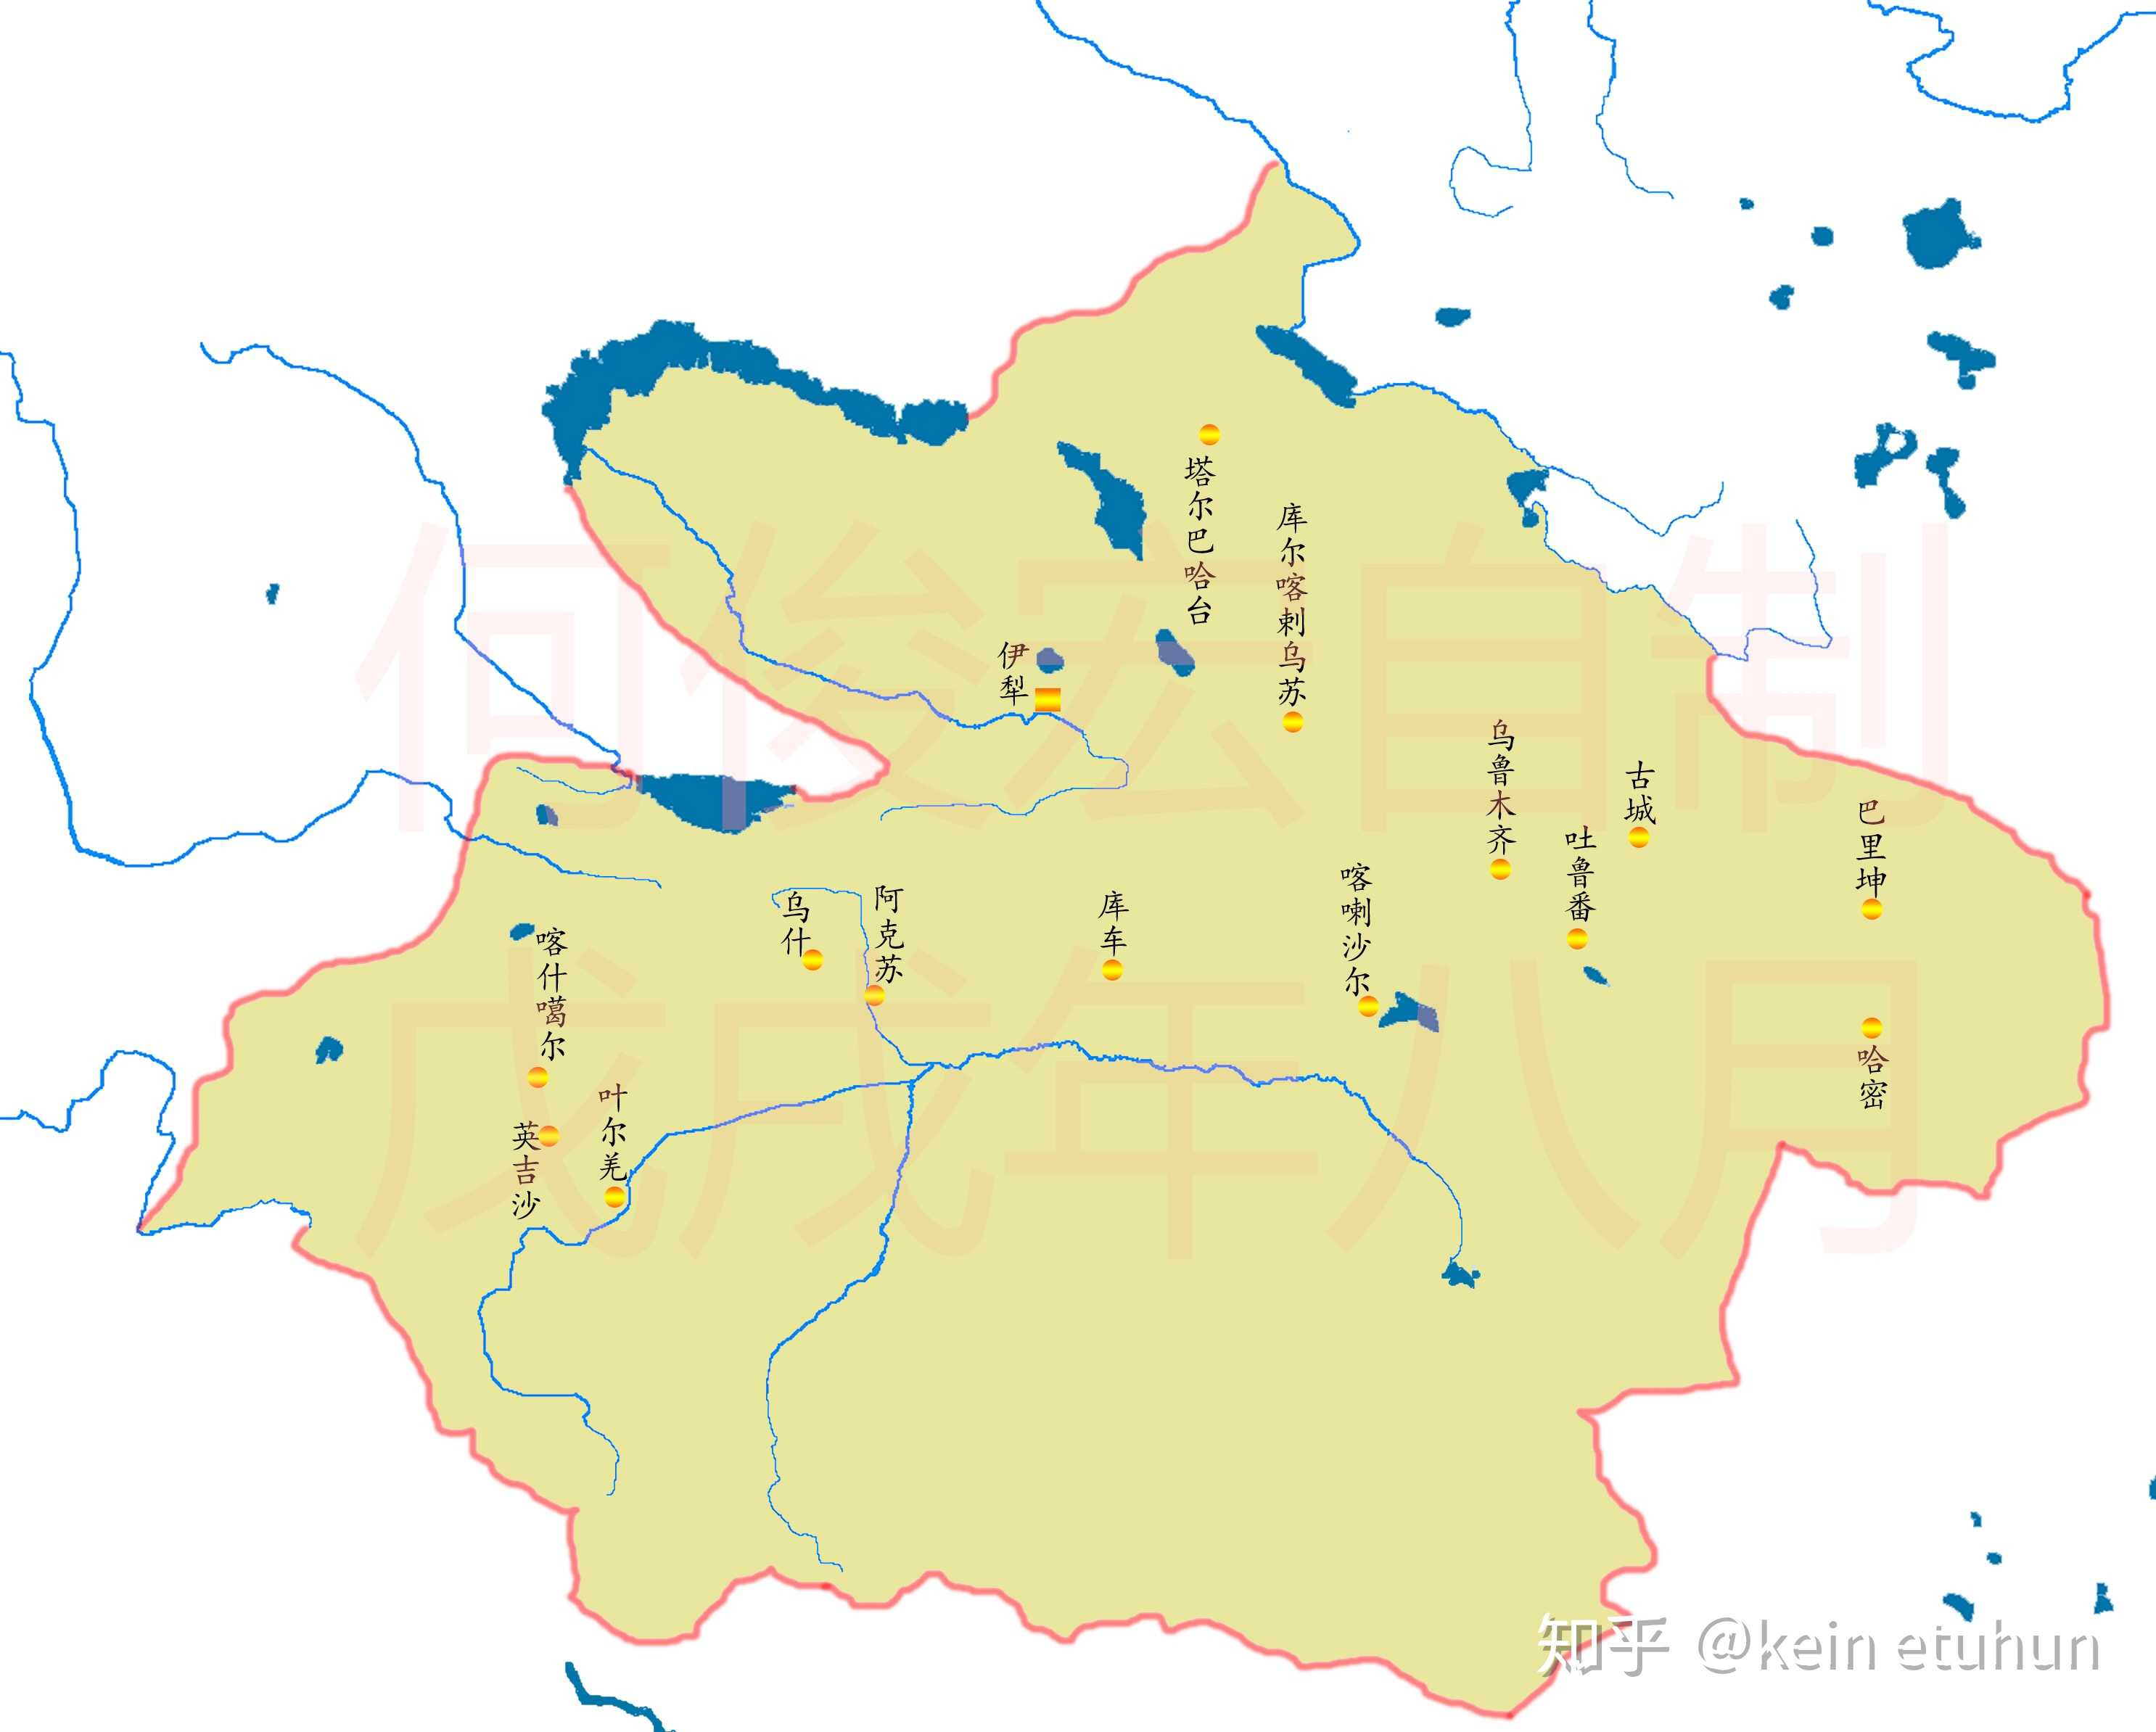 西南伊塞克湖以北原属布鲁特蒙古部落的游牧地已被中亚浩罕国事实控制